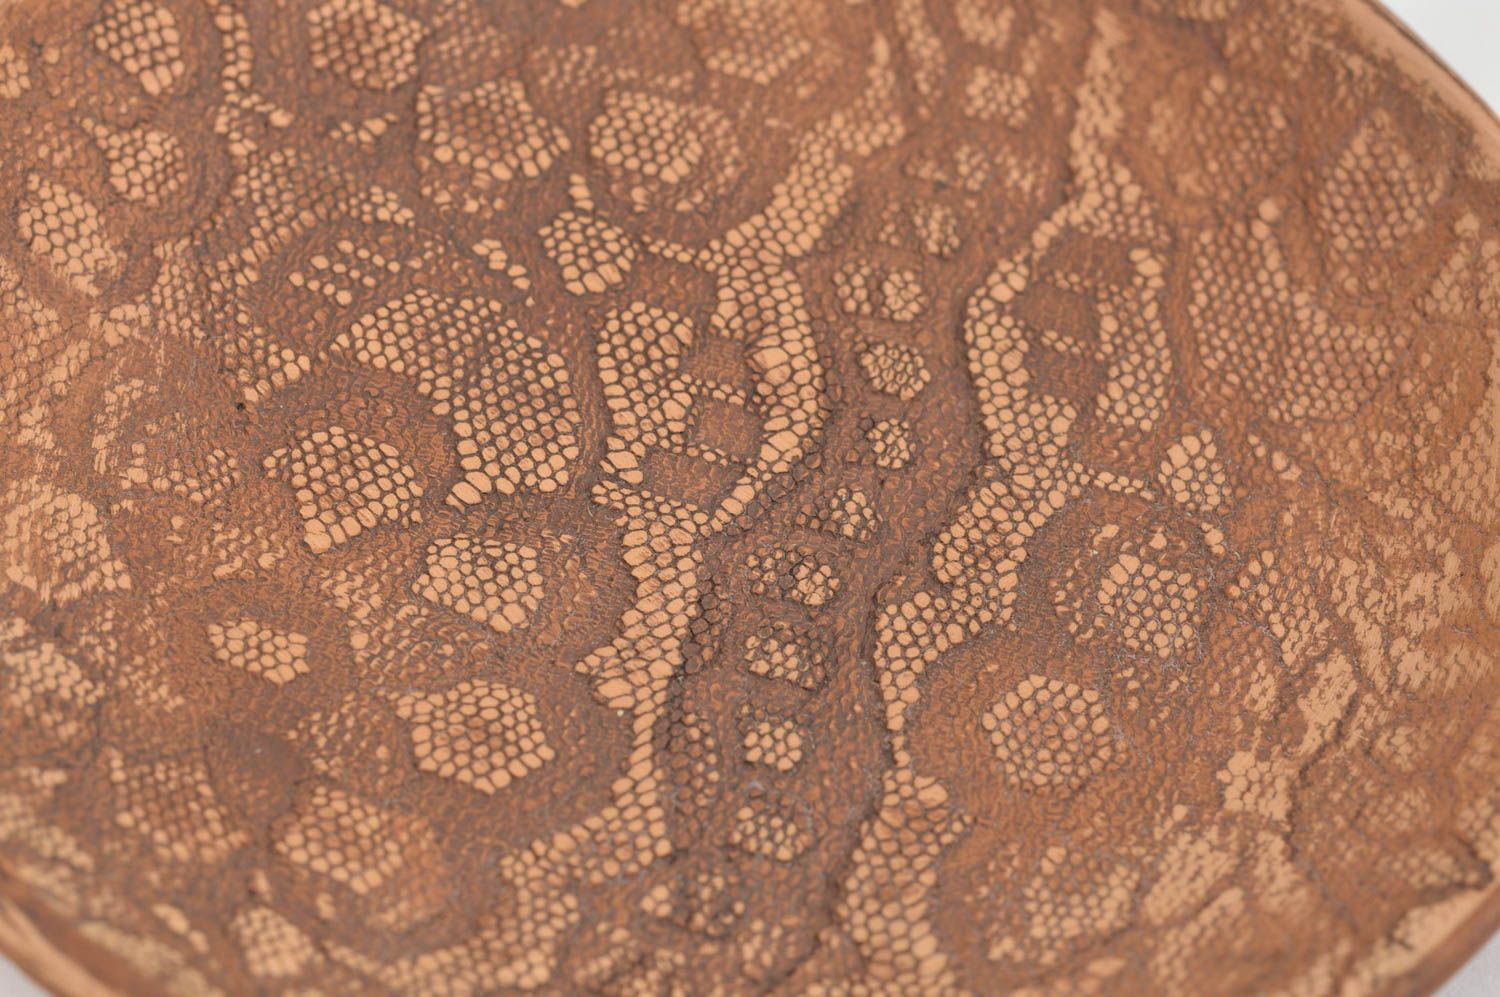 Schöner ungewöhnlicher brauner Unterteller mit Muster Öko Geschirr Handarbeit foto 5